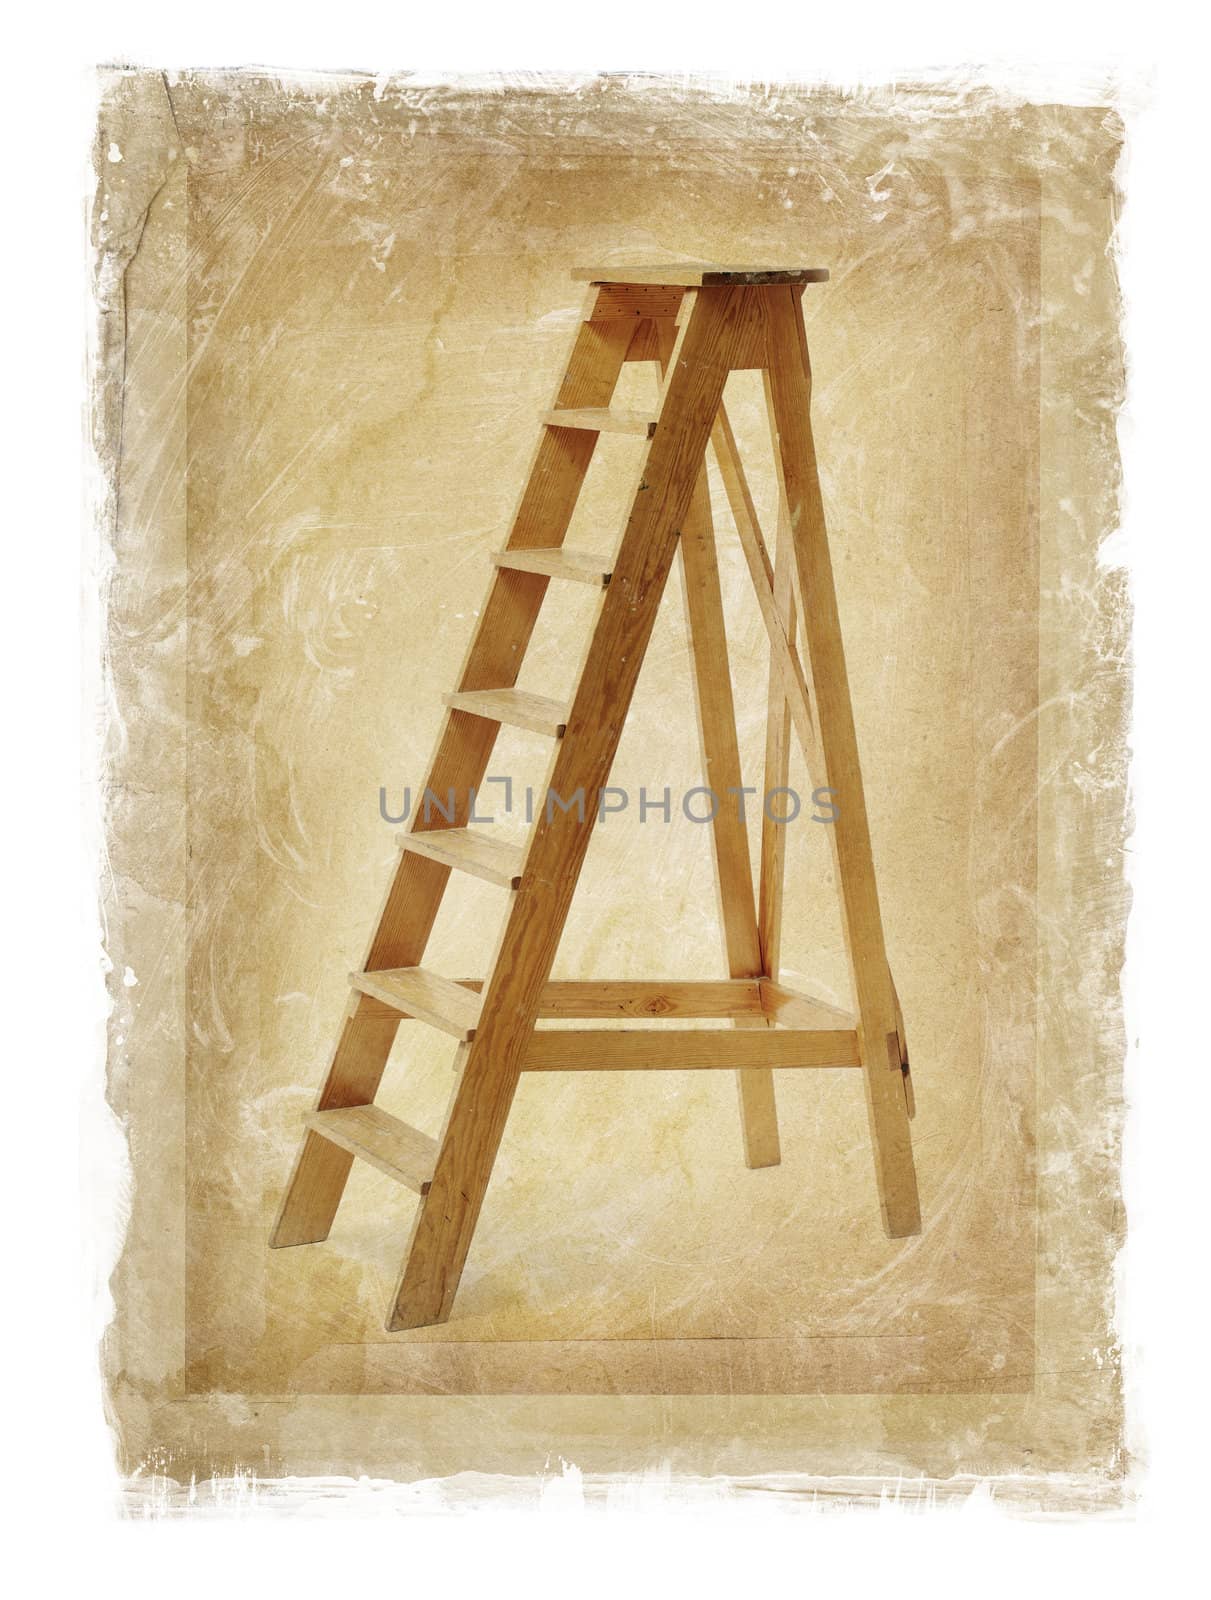 Grunge image of old wooden stepladder.